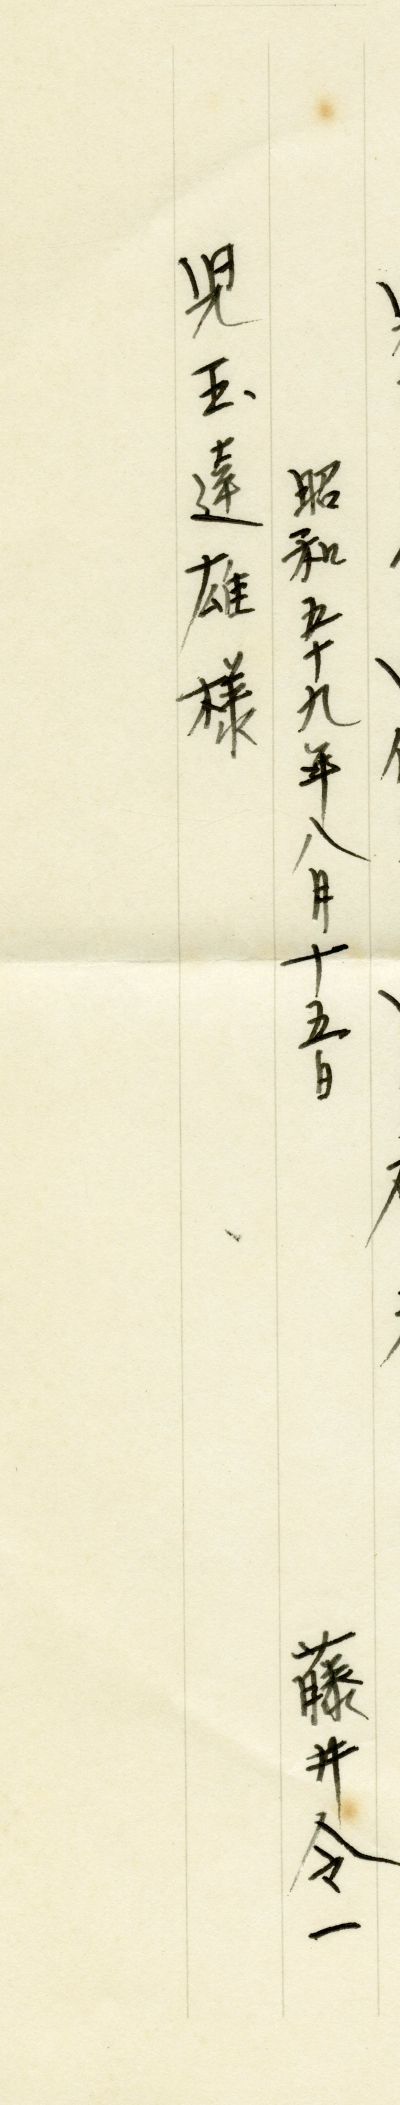 藤井令一『遠心浮遊』（1984年、海風社）にはさみこまれた手紙から